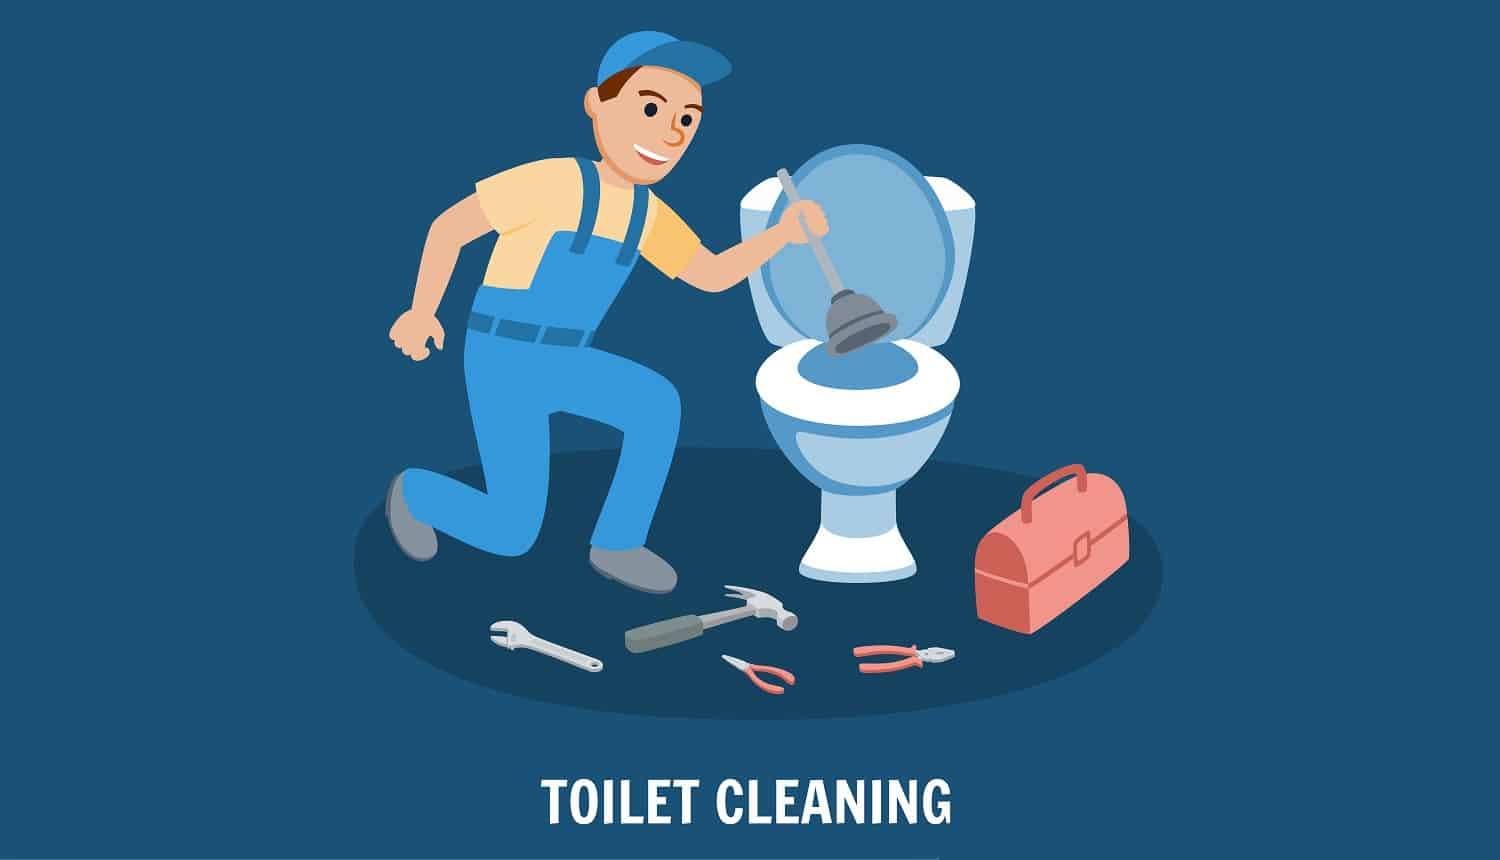 Toilet Cleaning, Plumbing Service. Plumbing Toilet